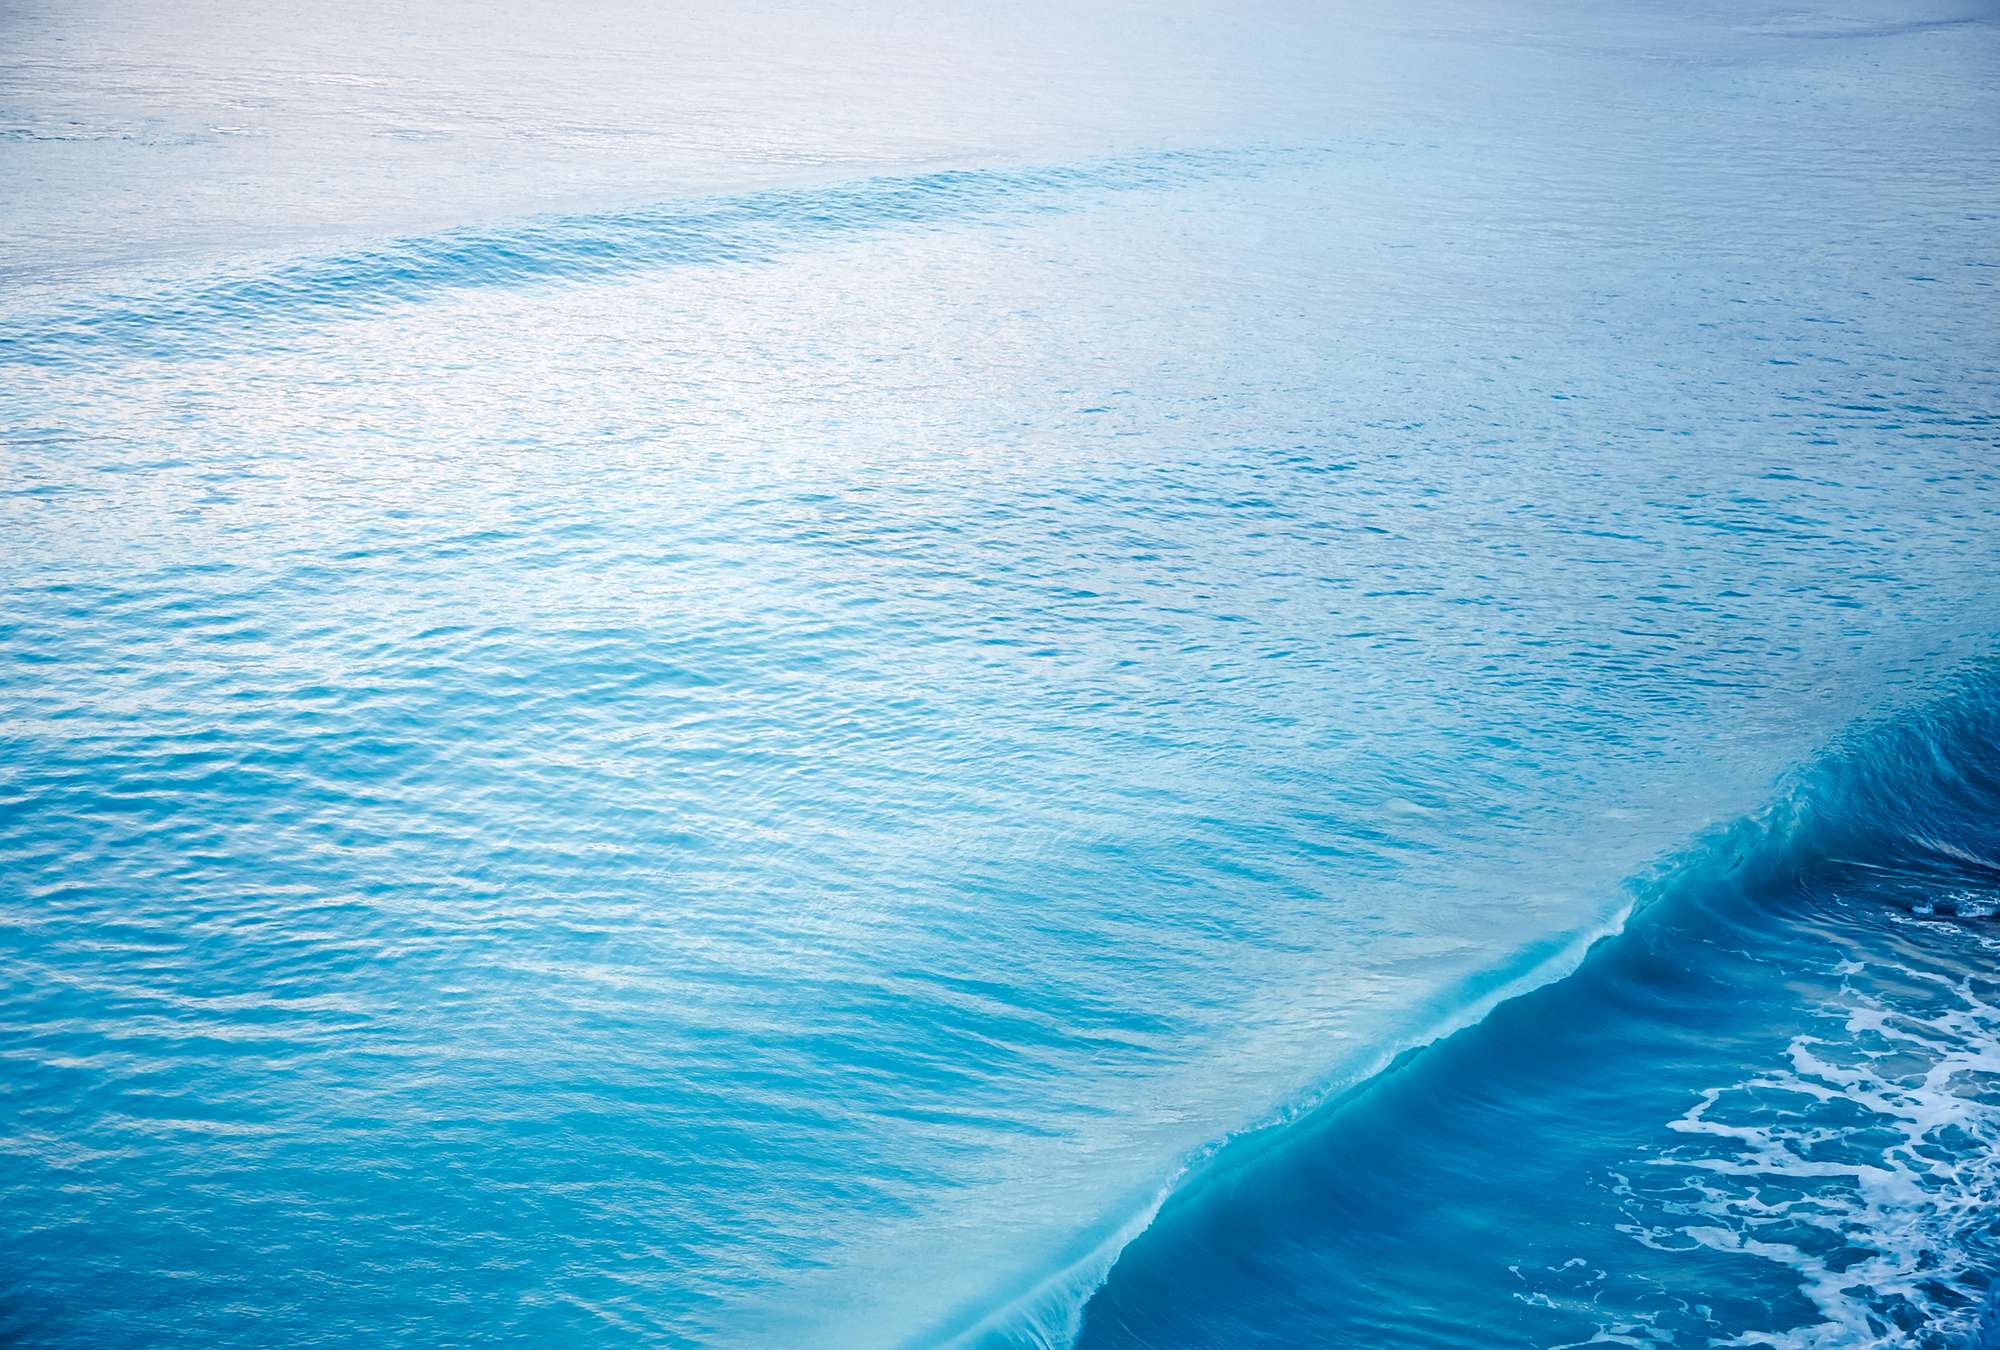             Papier peint panoramique d'une vague qui se brise dans la mer
        